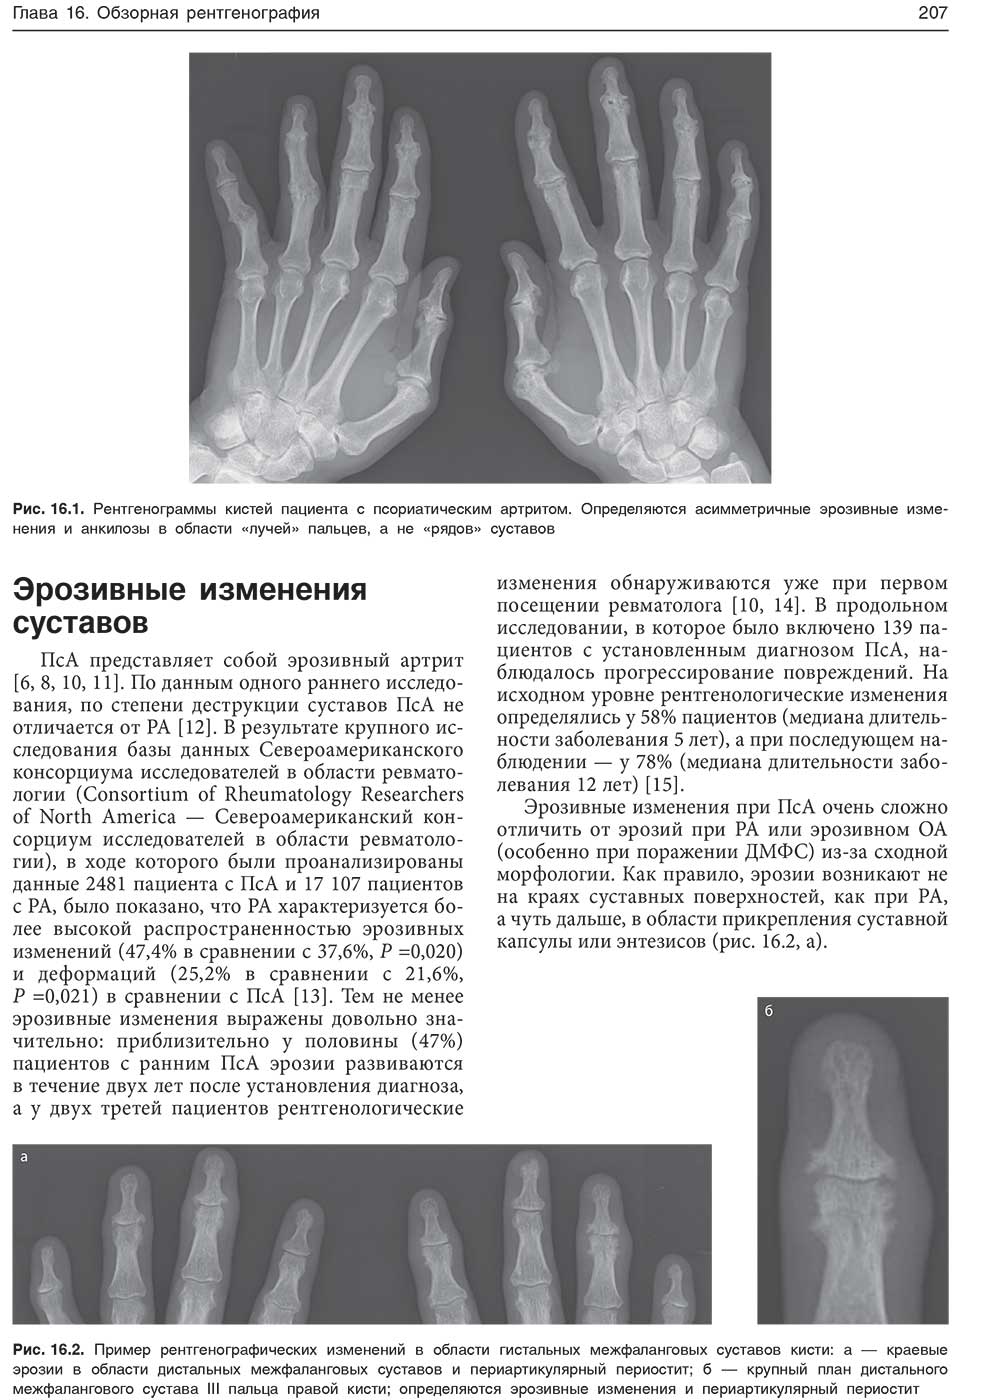 Пример рентгенографических изменений в области гистальных межфаланговых суставов кисти: